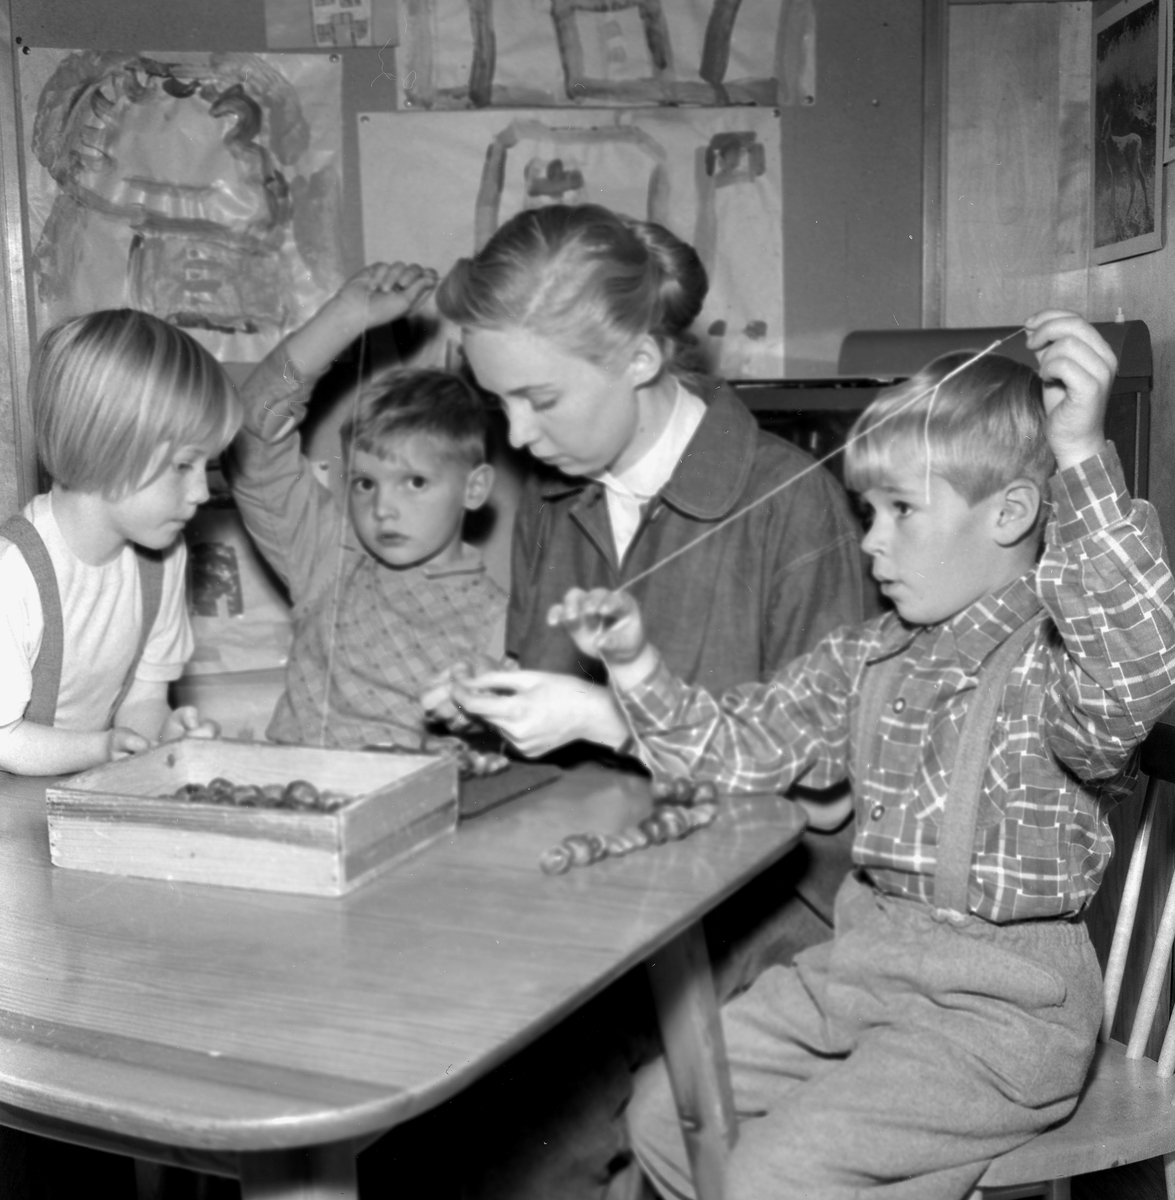 Barnträdgårdar. Bildsidan.
31 oktober 1955.